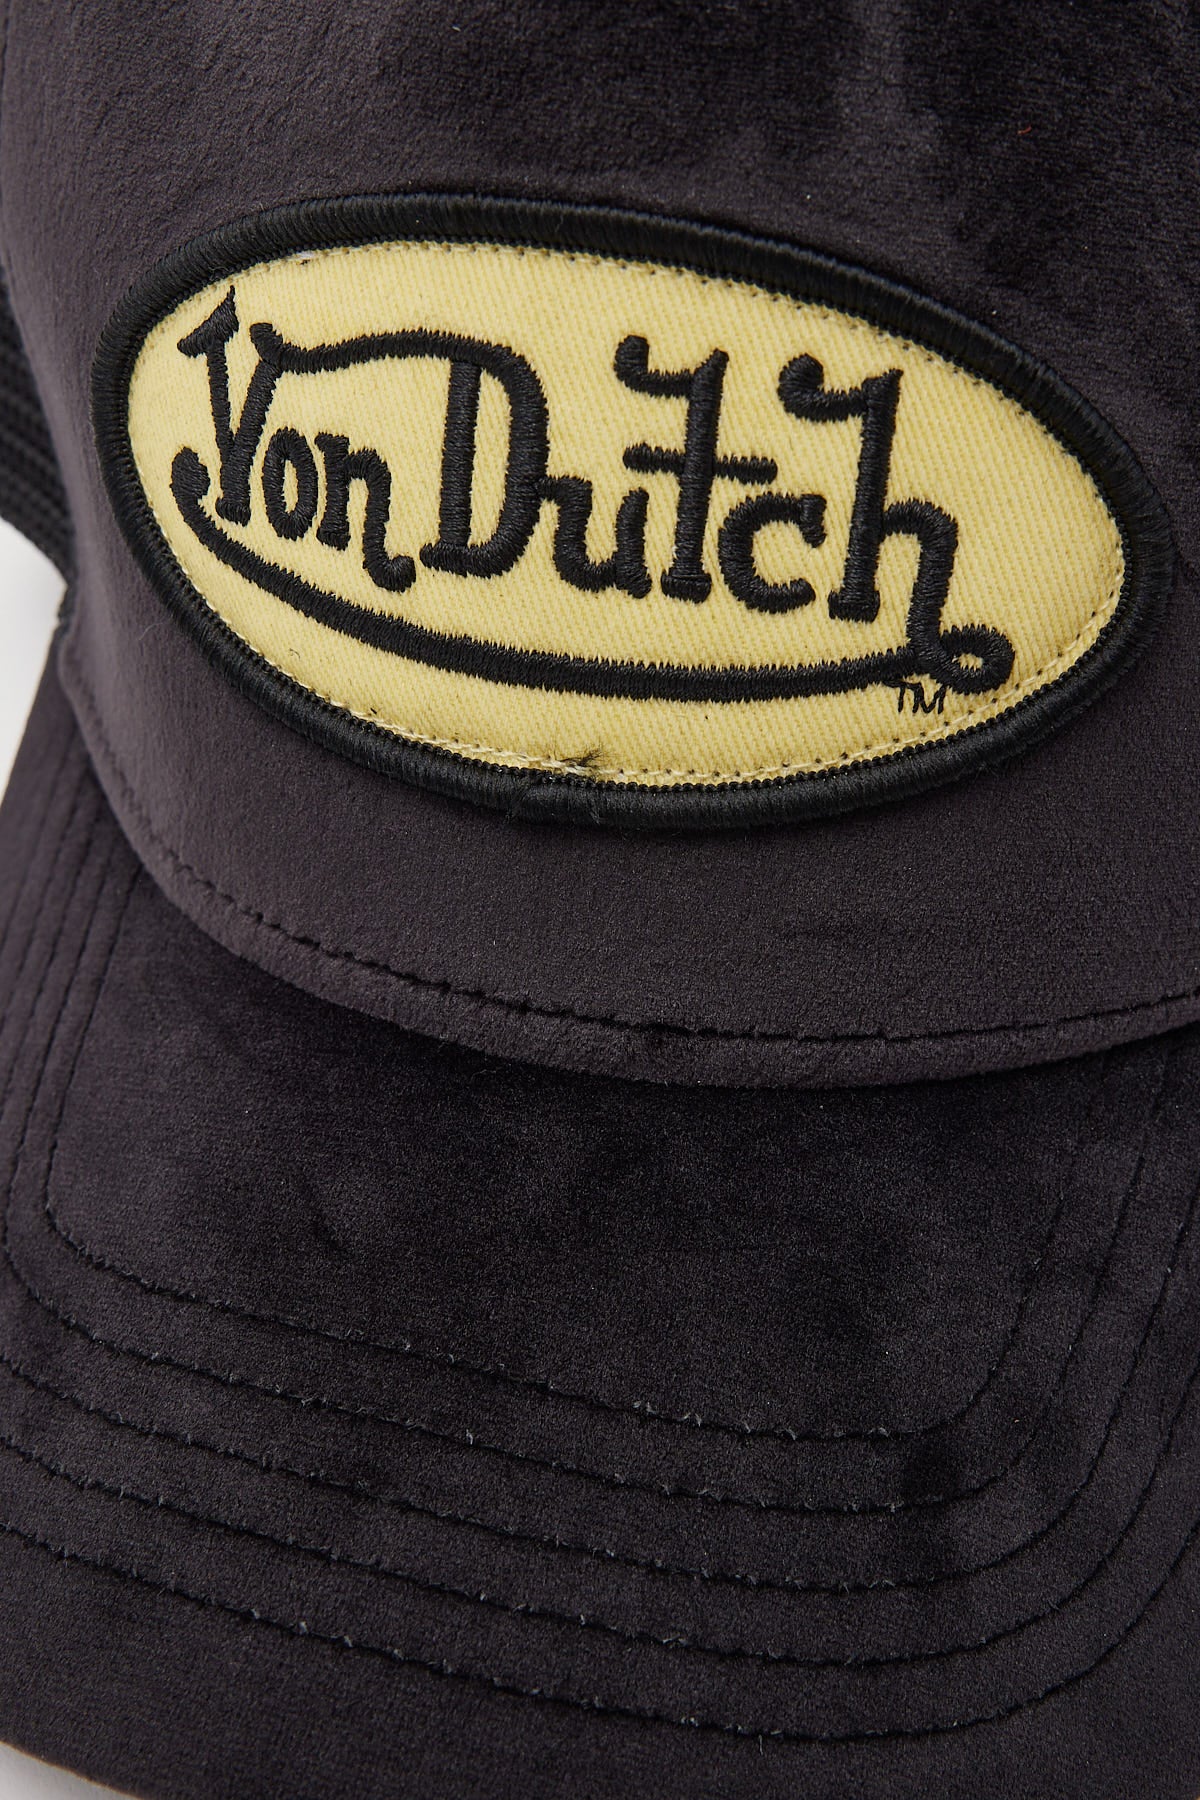 Von Dutch Black Velvet Trucker Black